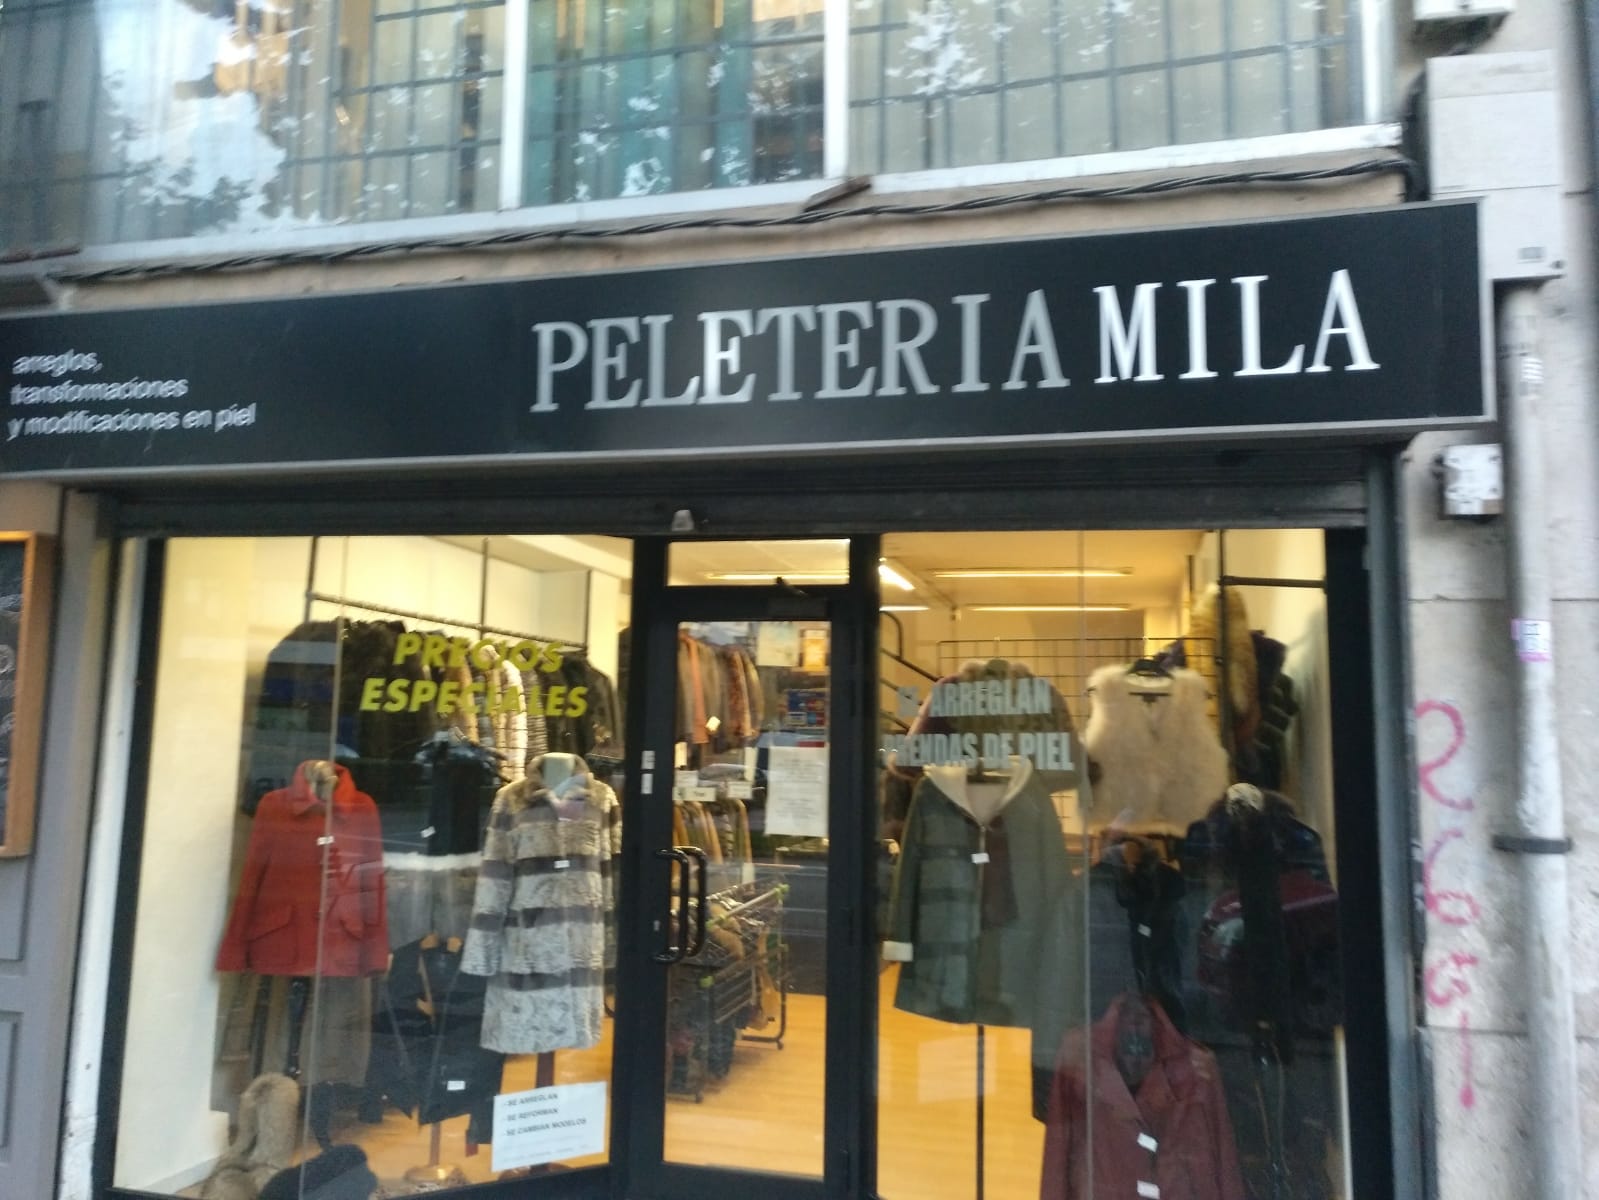 Peleteria Mila